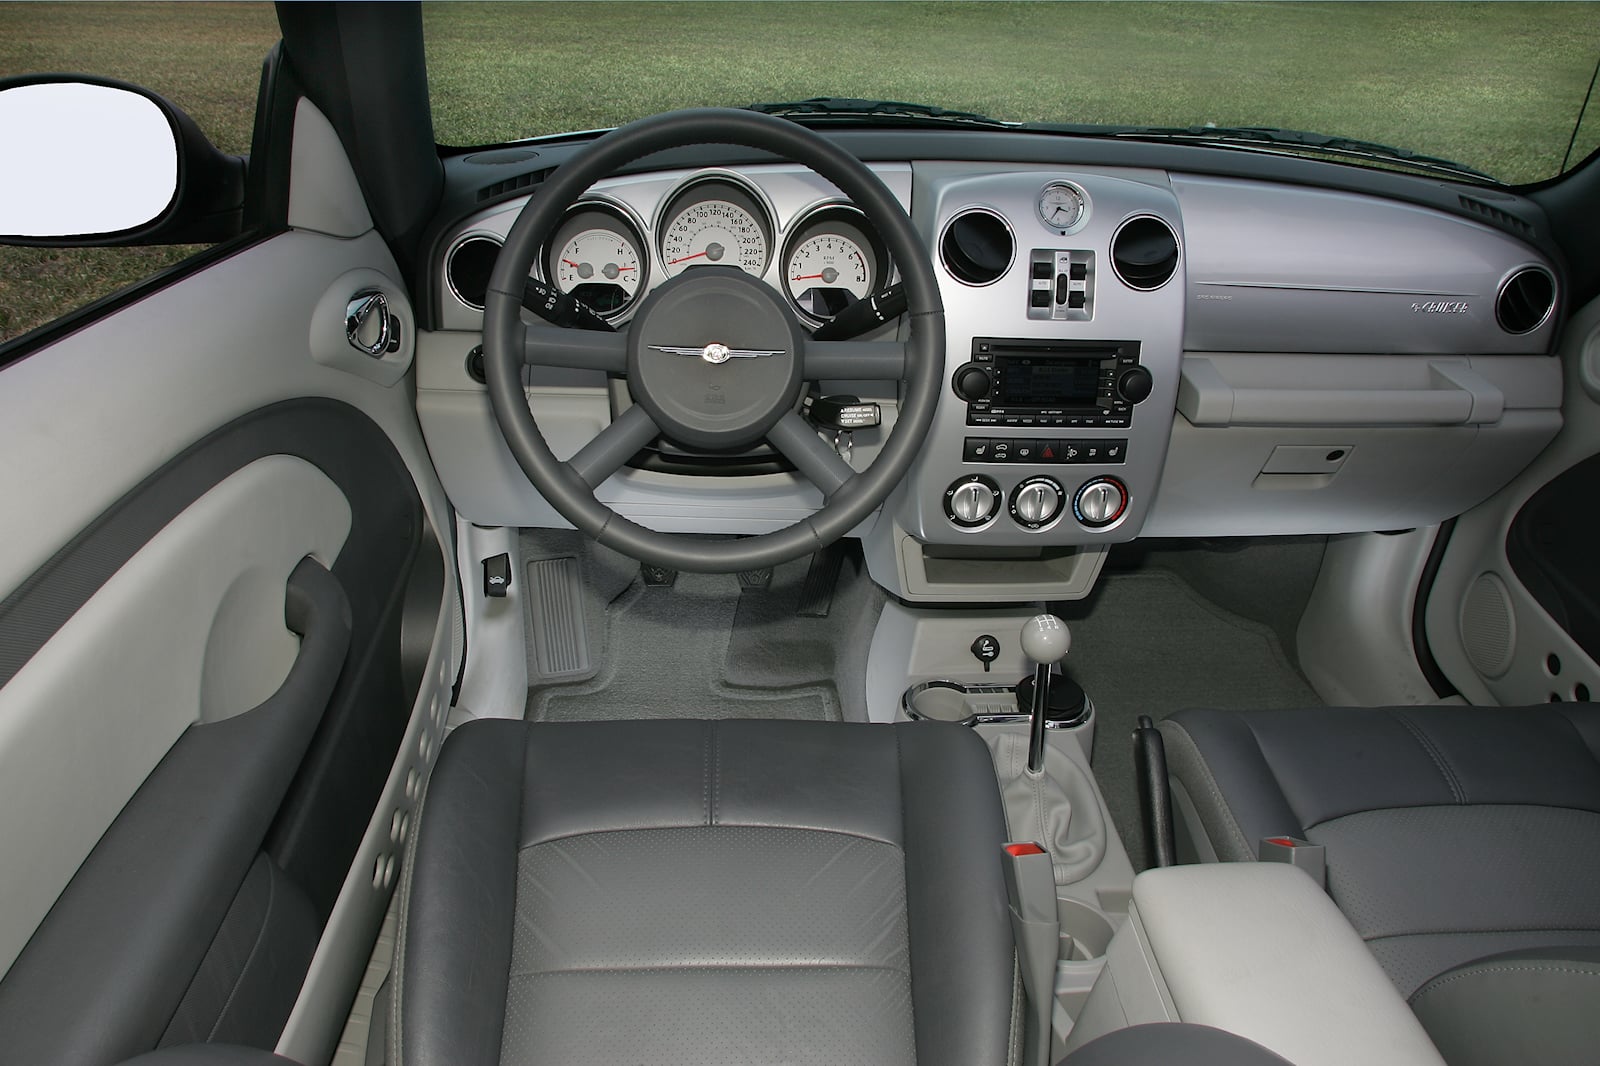 2008 Chrysler PT Cruiser Convertible Driver Area